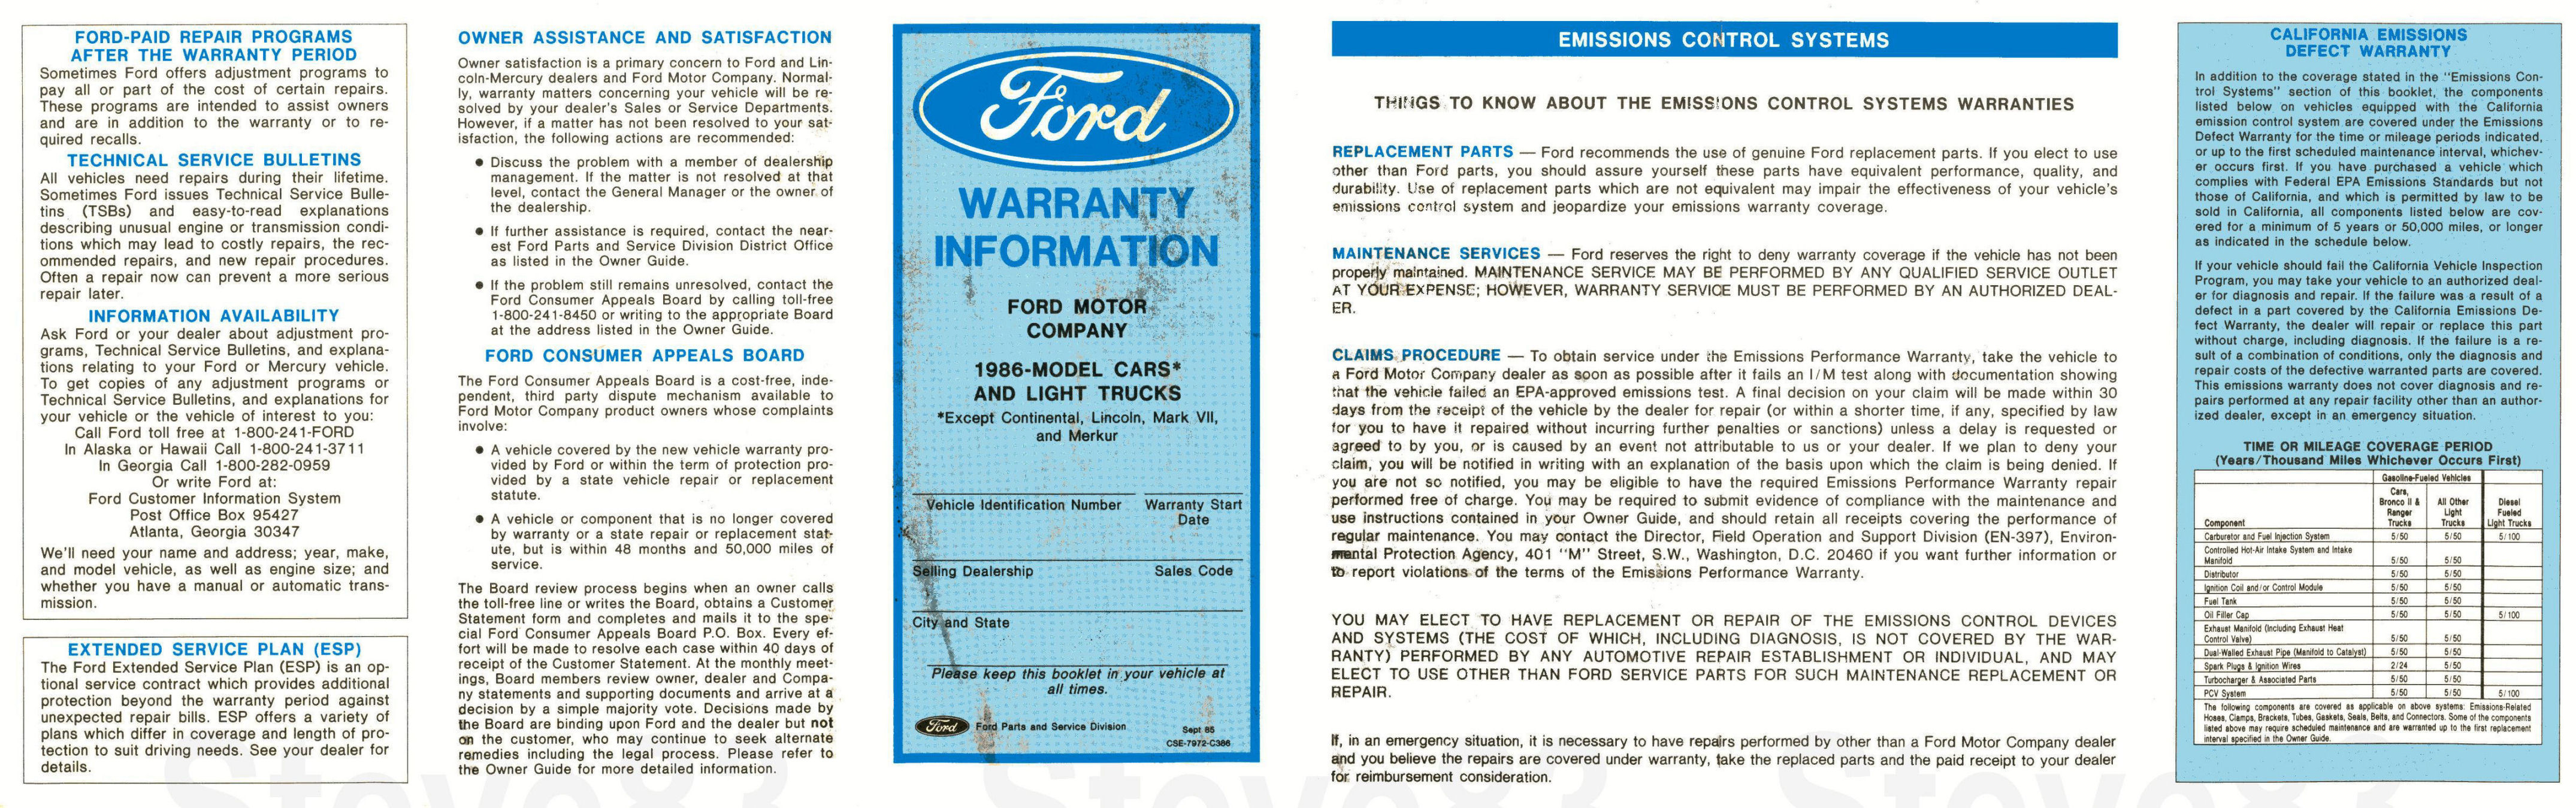 1986_Ford_Light_Truck_Warranty_Guide-01